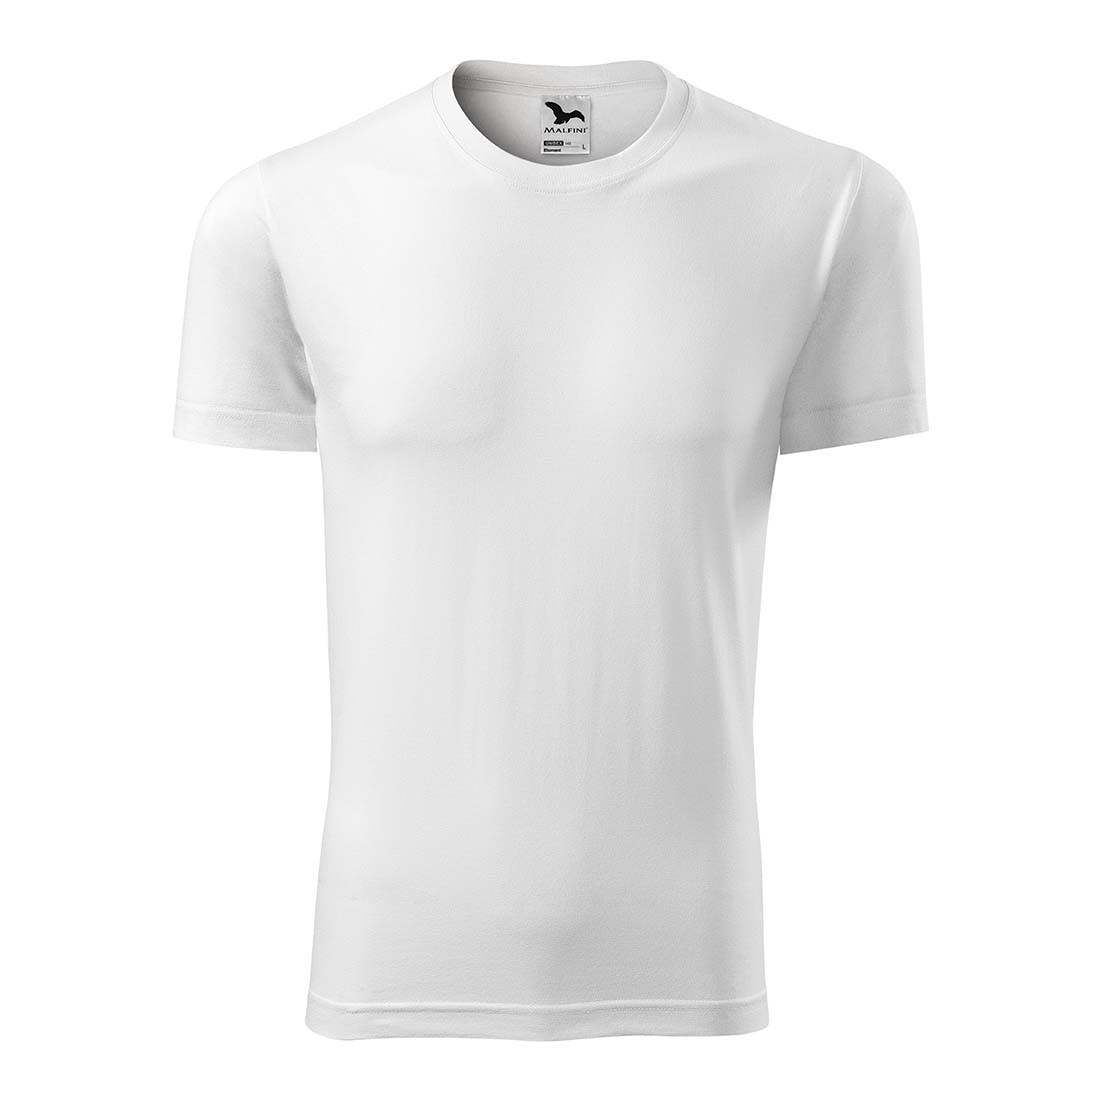 Unisex T-shirt - Safetywear